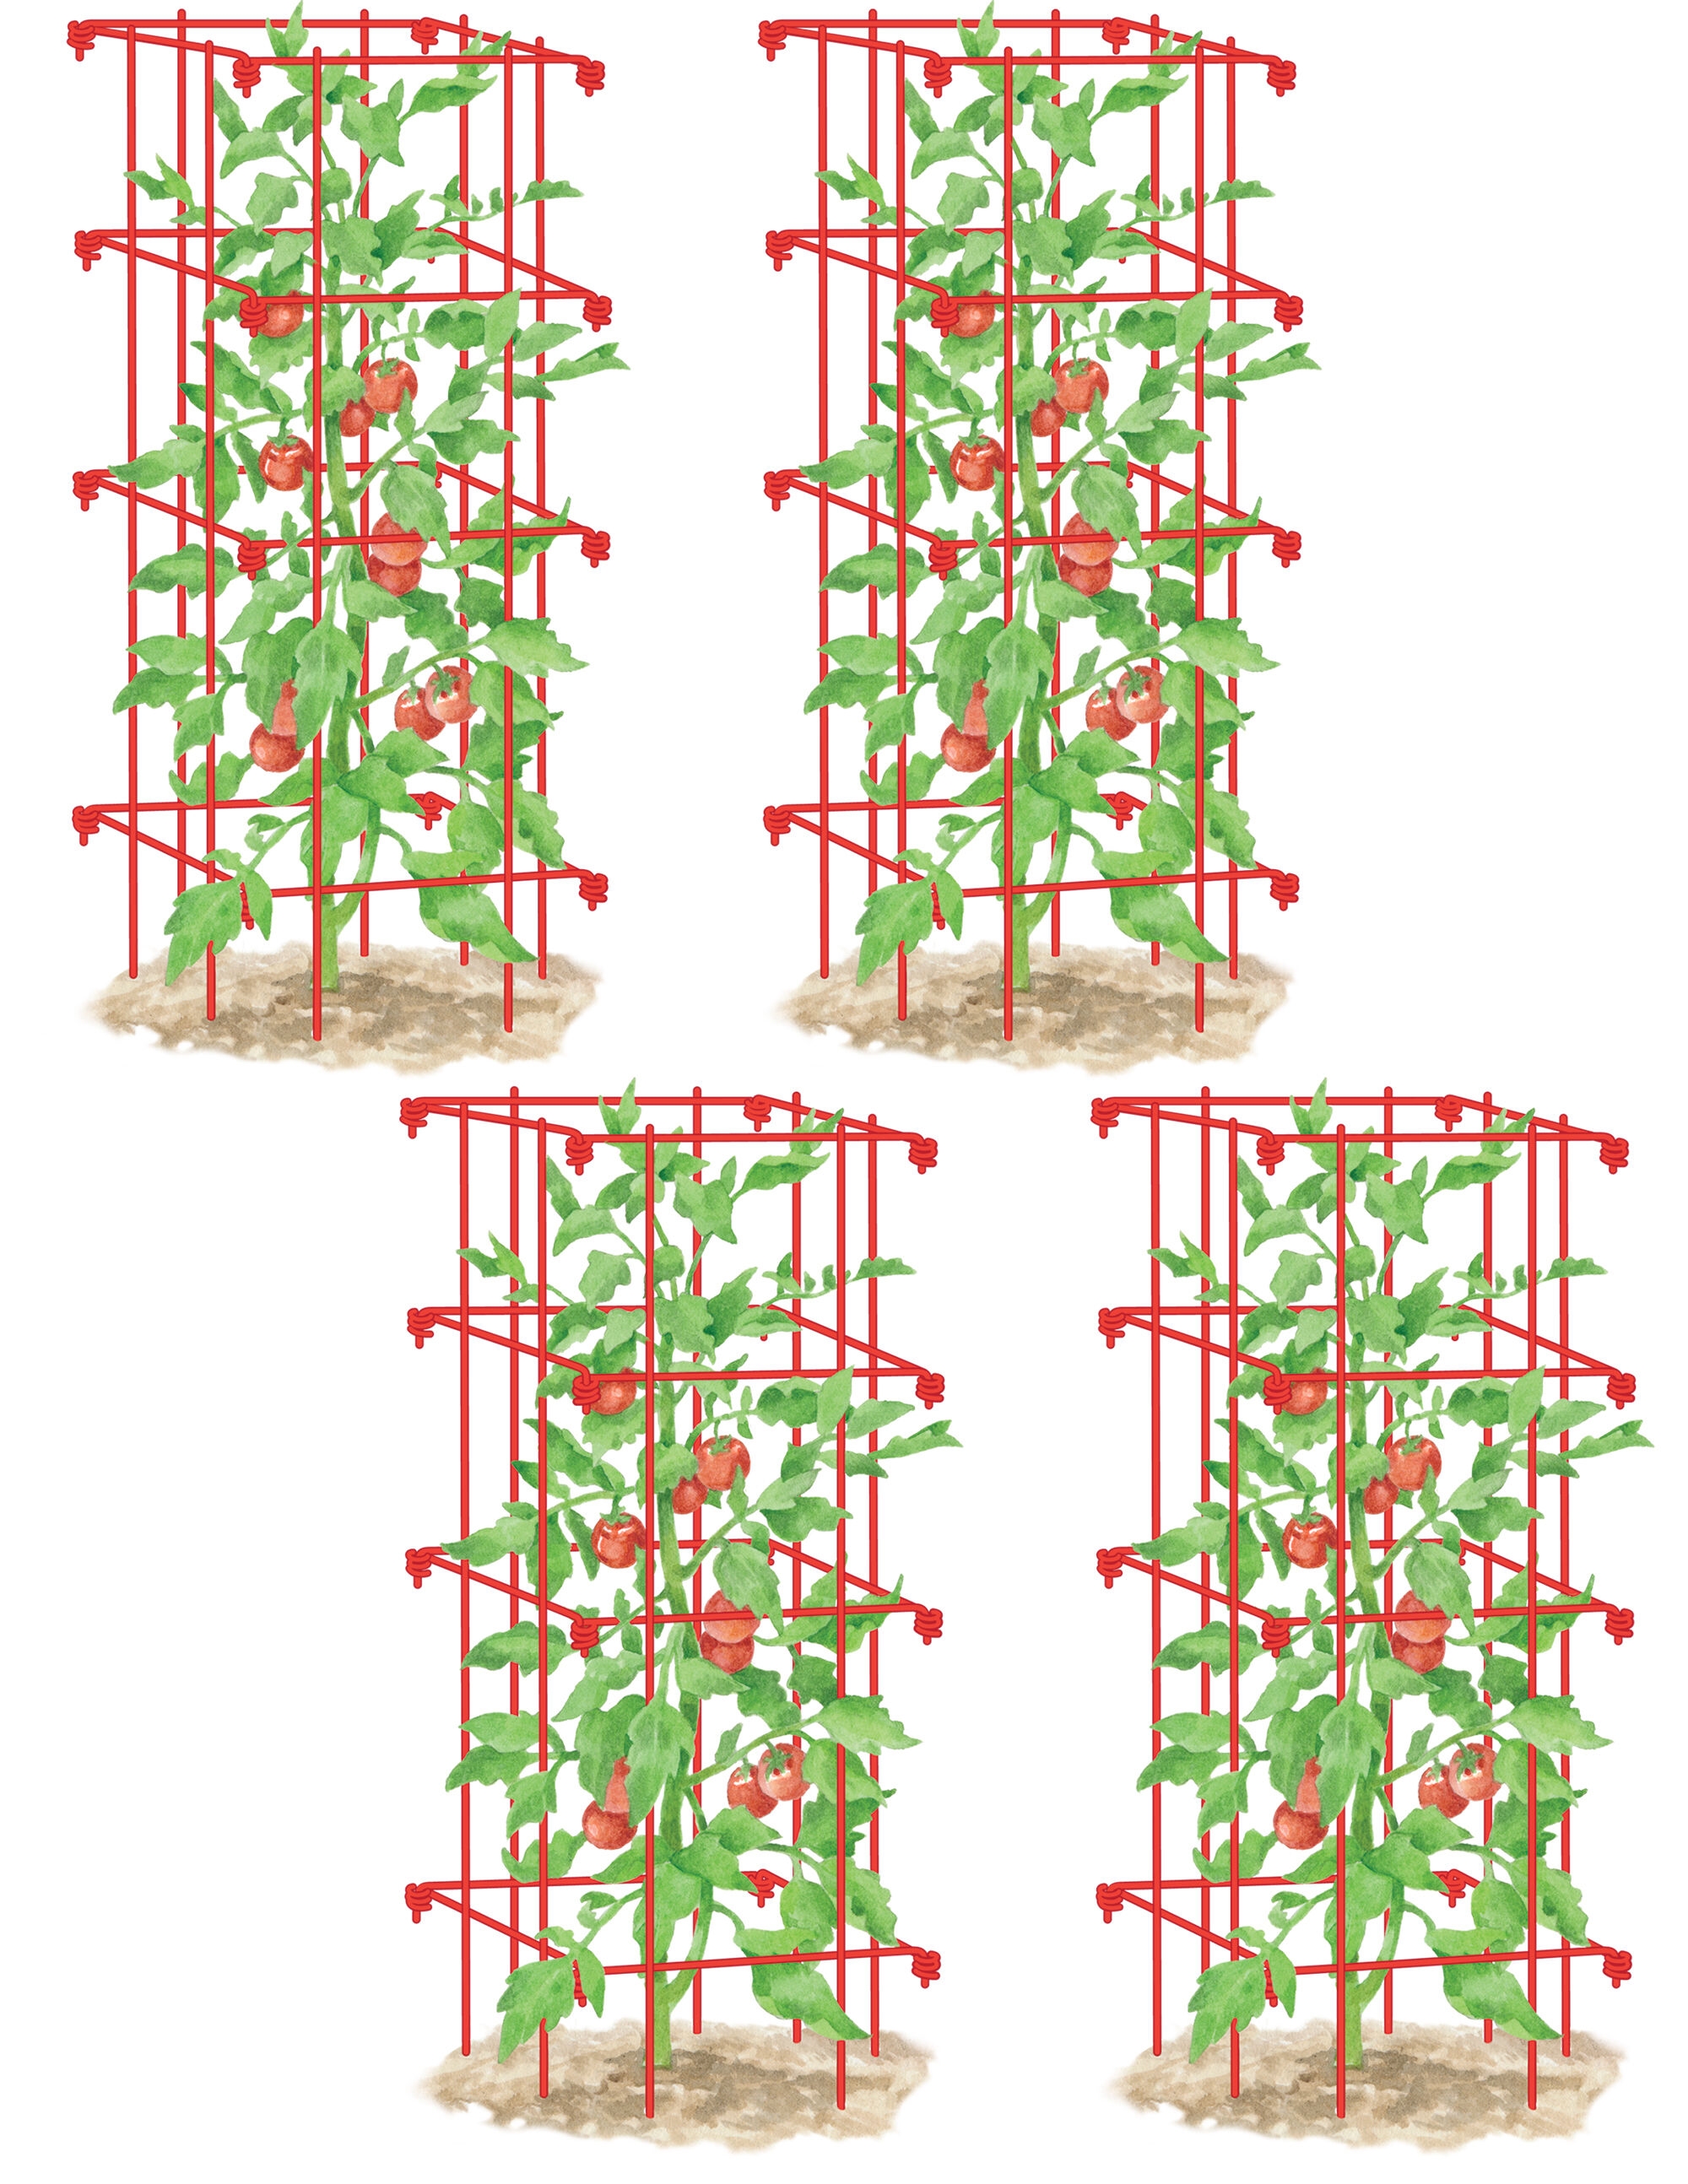 16900円 人気カラーの Growsun Large Tomato Cage 5ft Tall 5-Pack Plant Supports Garden Stakes 40